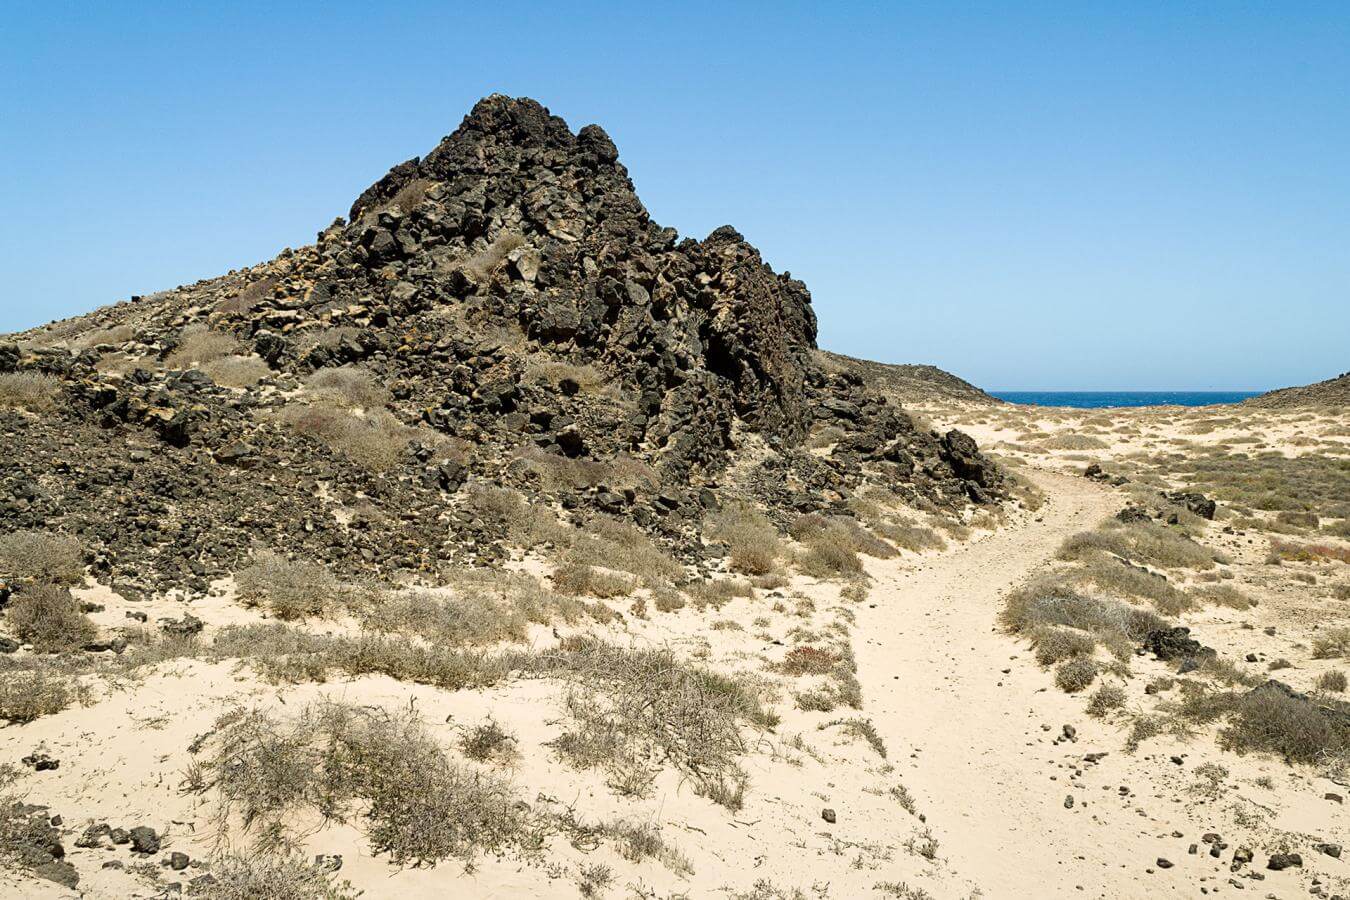  Fuerteventura. Islote de Lobos